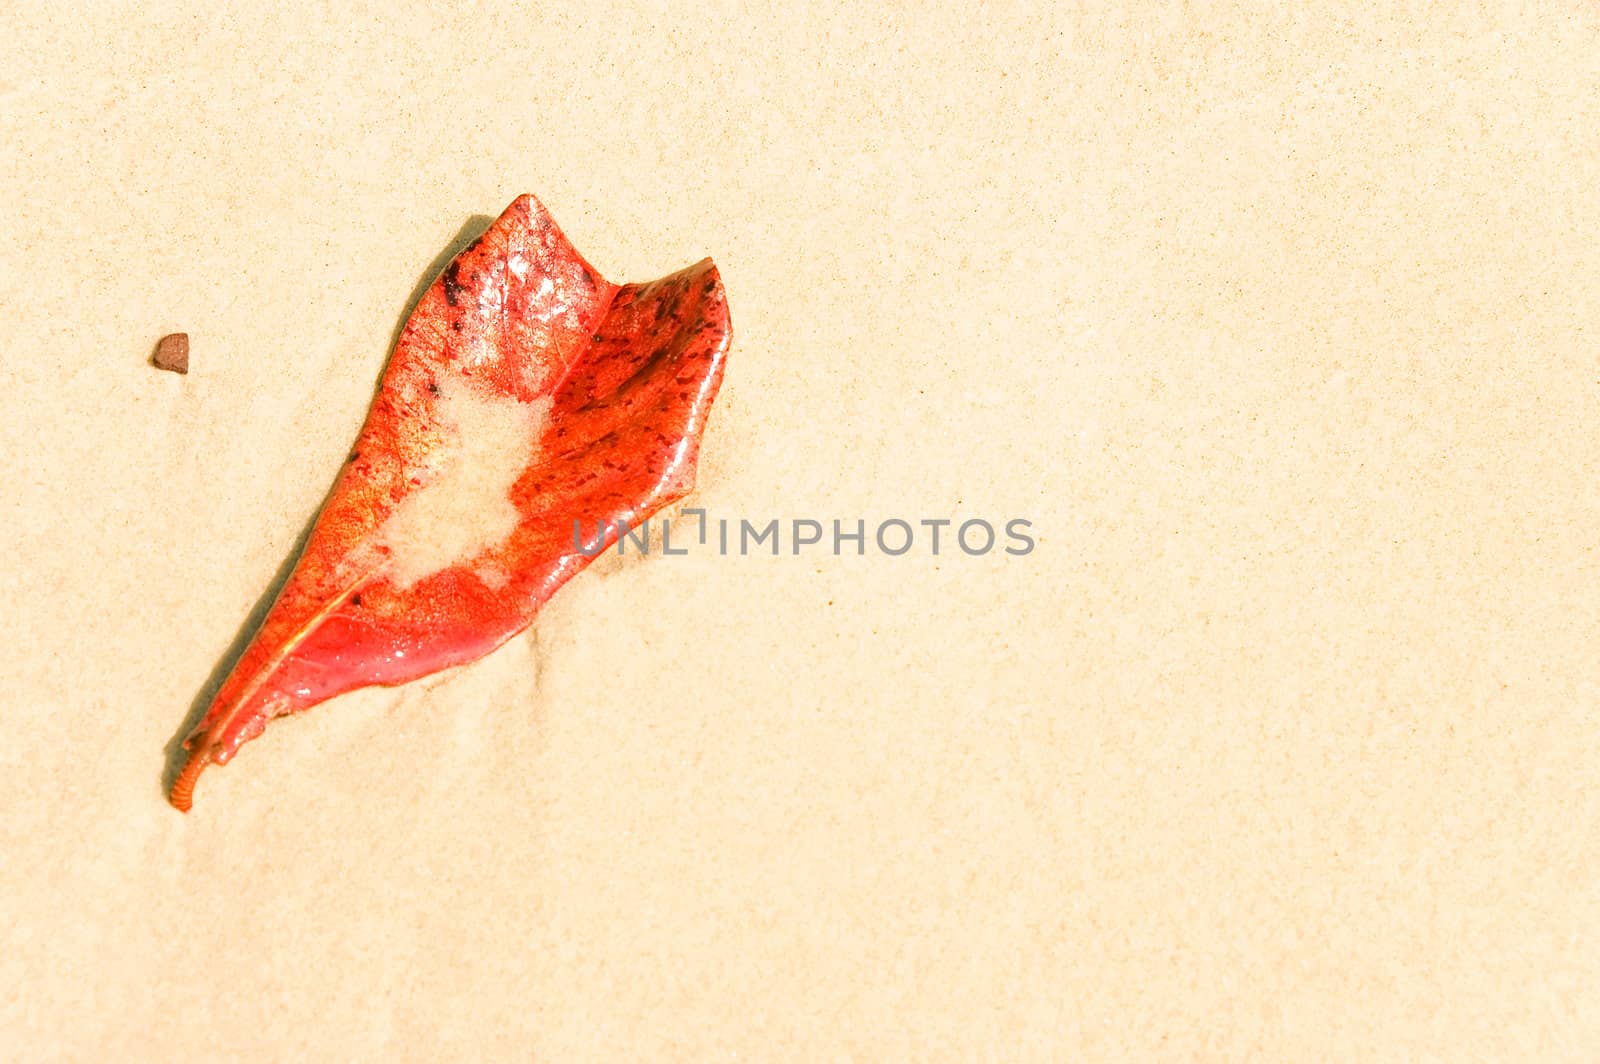 leaf on a beach